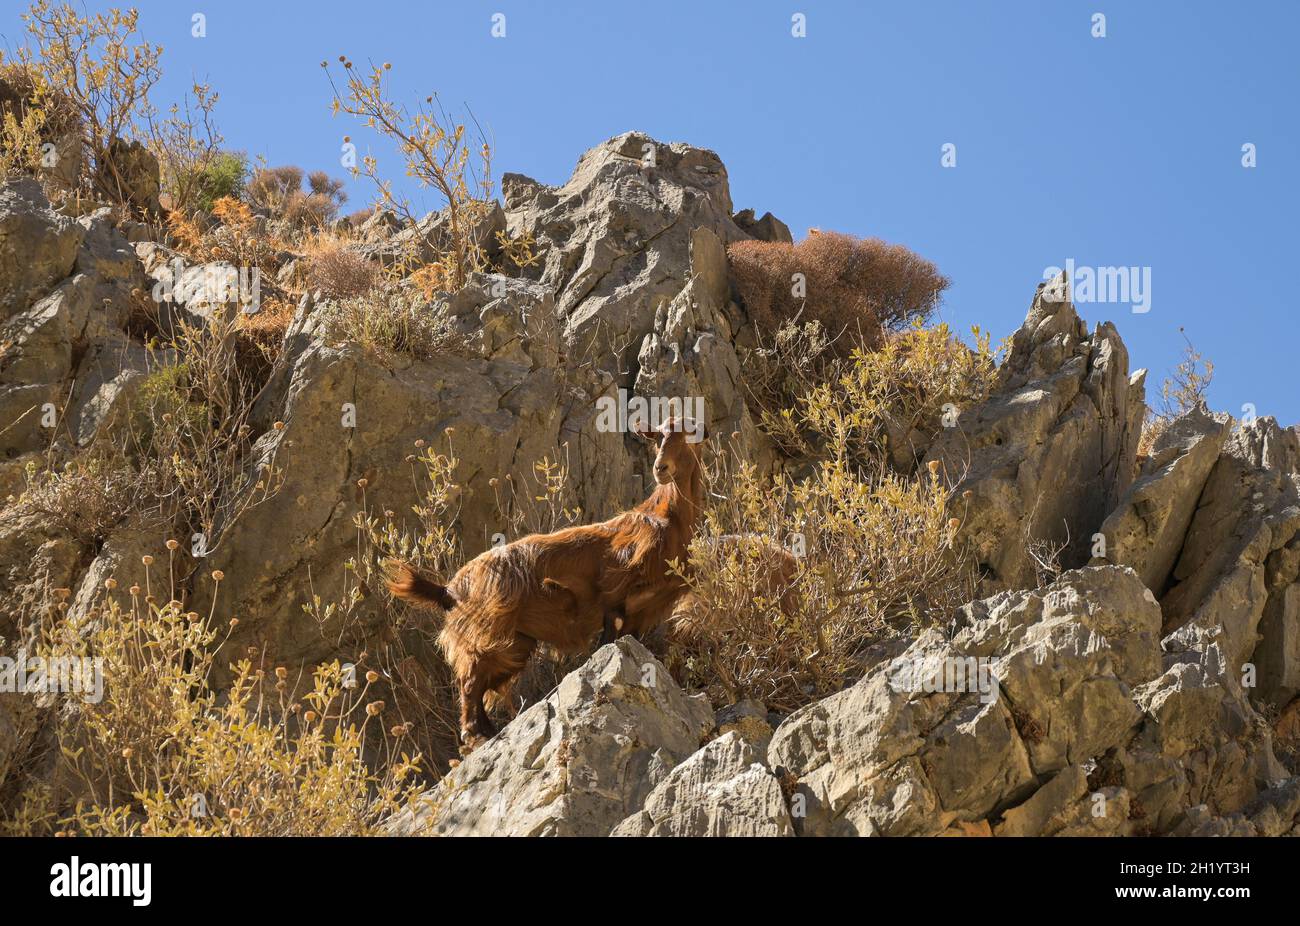 Ziege, Imbros-Schlucht, Kreta, Griechenland Foto Stock